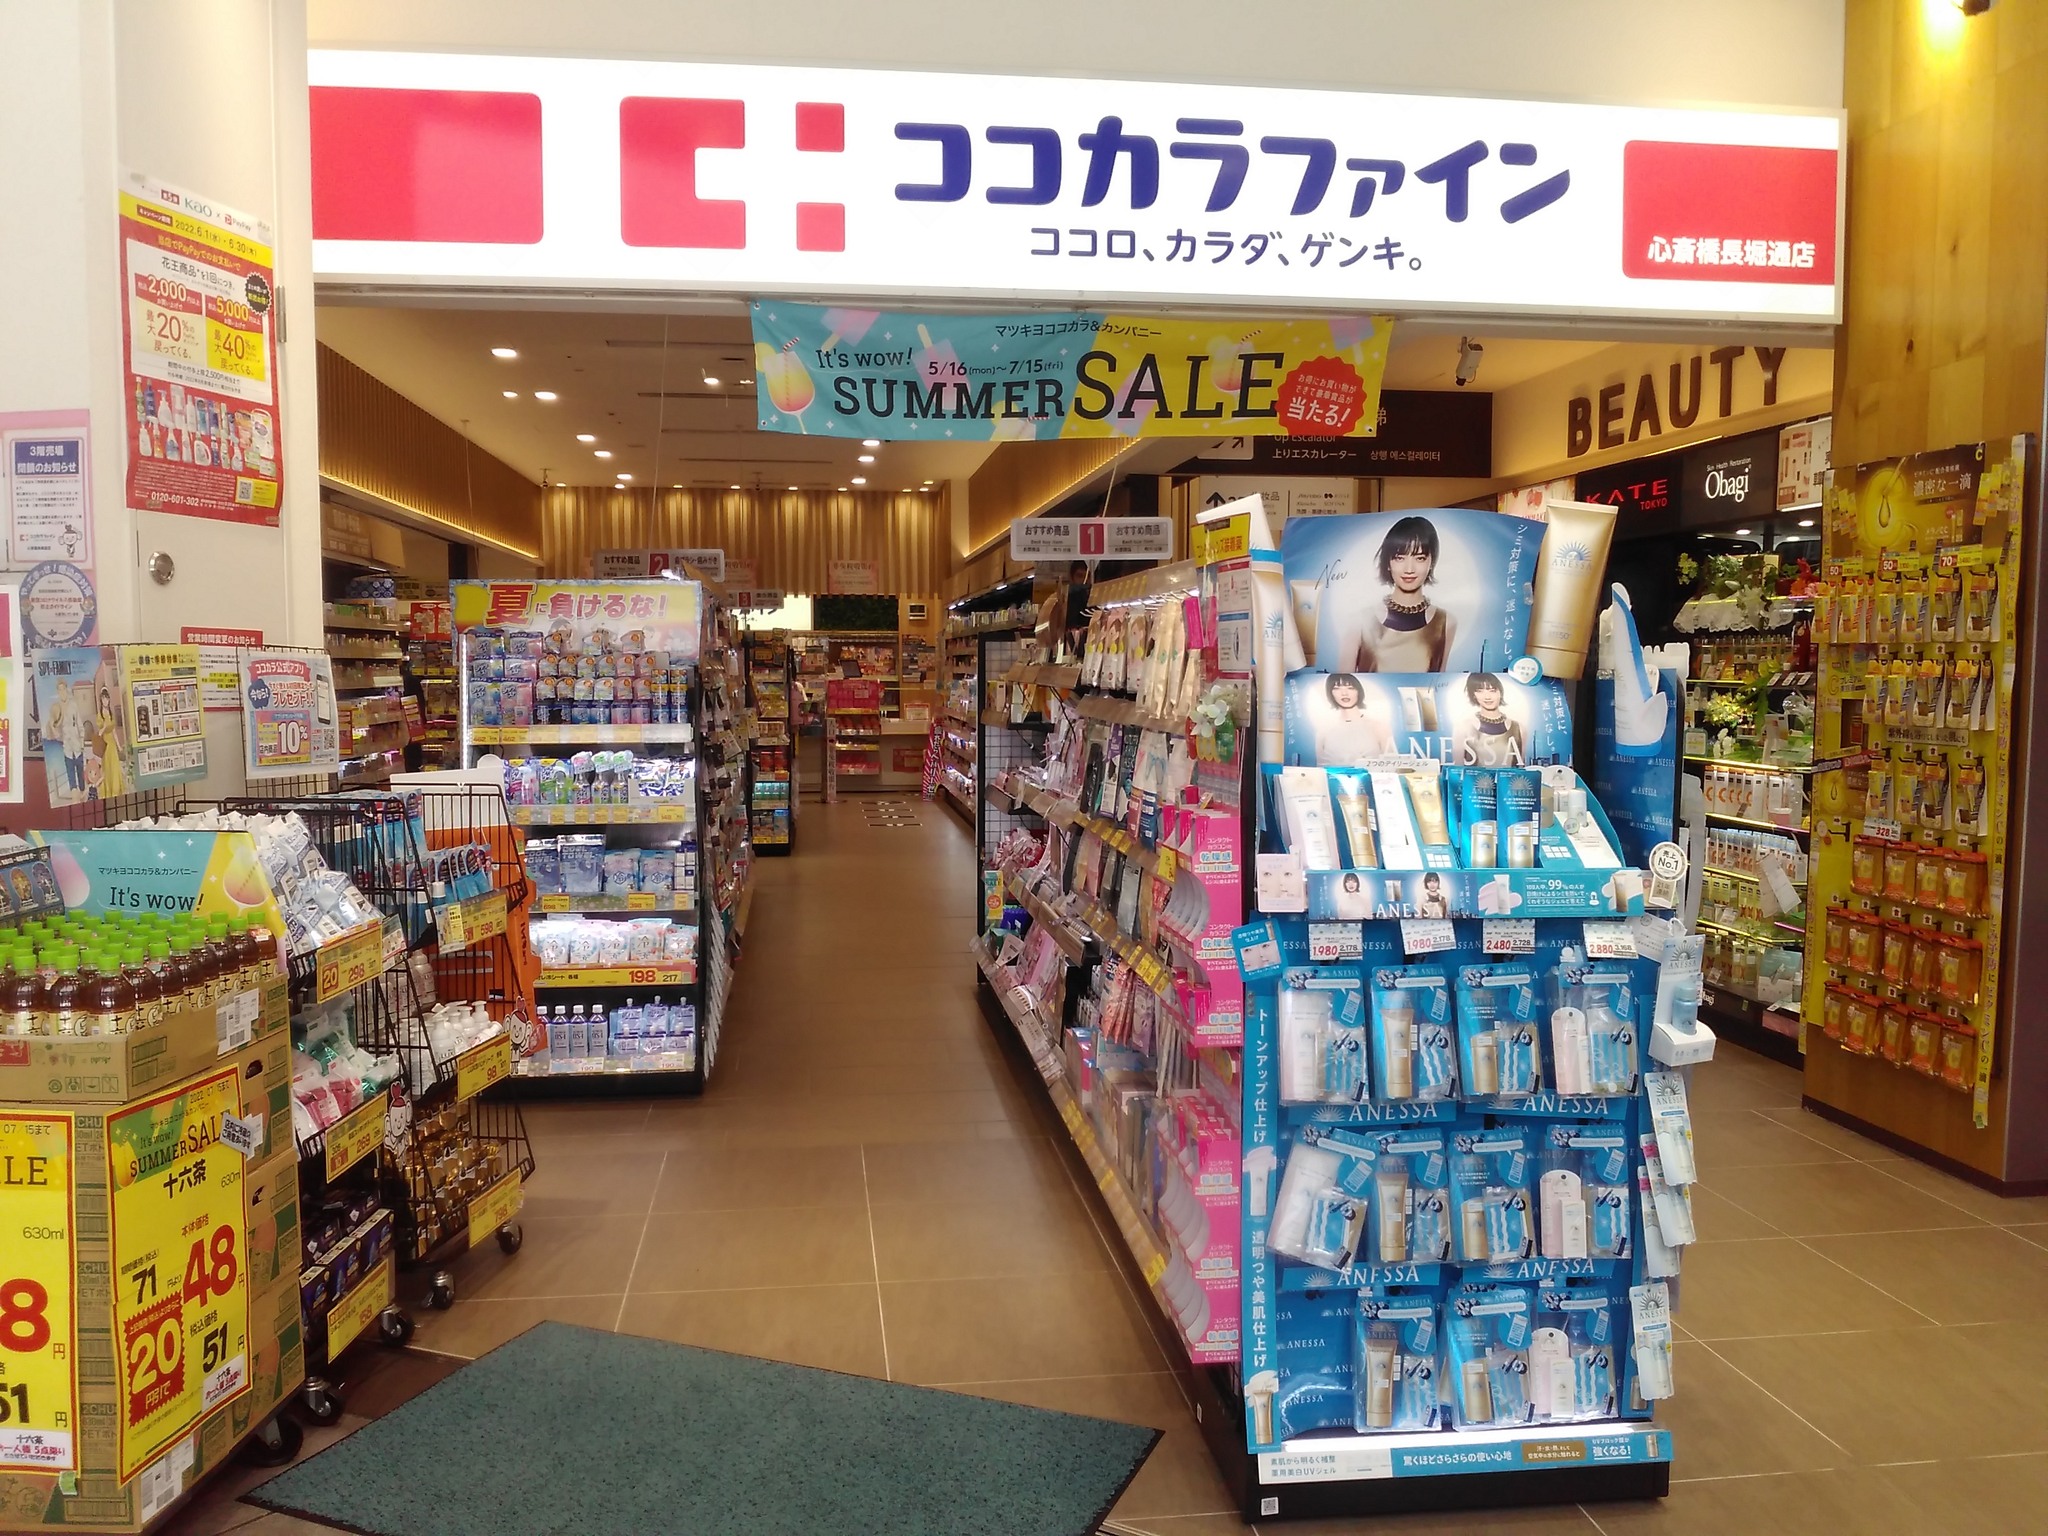 有日本雜誌報導，許多藥妝店會挑觀光客偷灌單，讓顧客多付錢。圖僅示意，非當事店家。圖/取自Matsumotokiyoshi臉書 